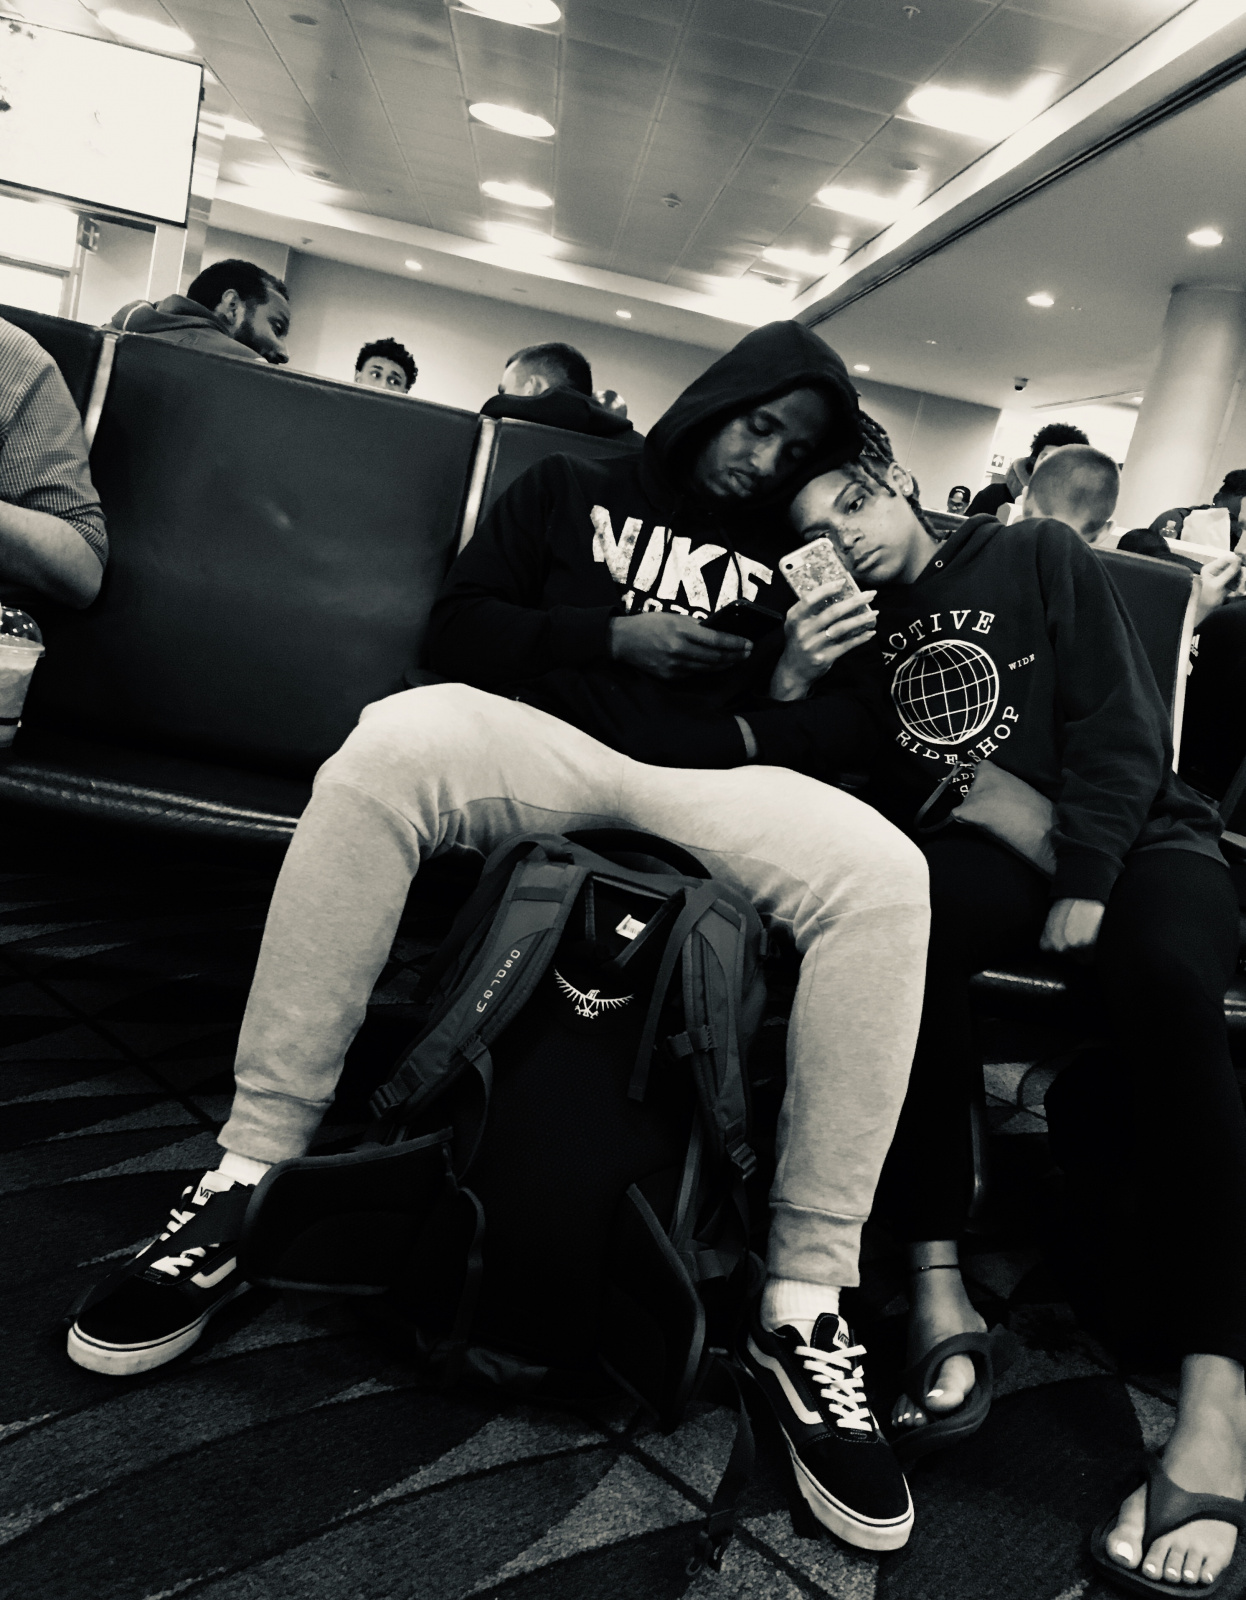 Una pareja esperando en el aeropuerto, mirando sus celulares